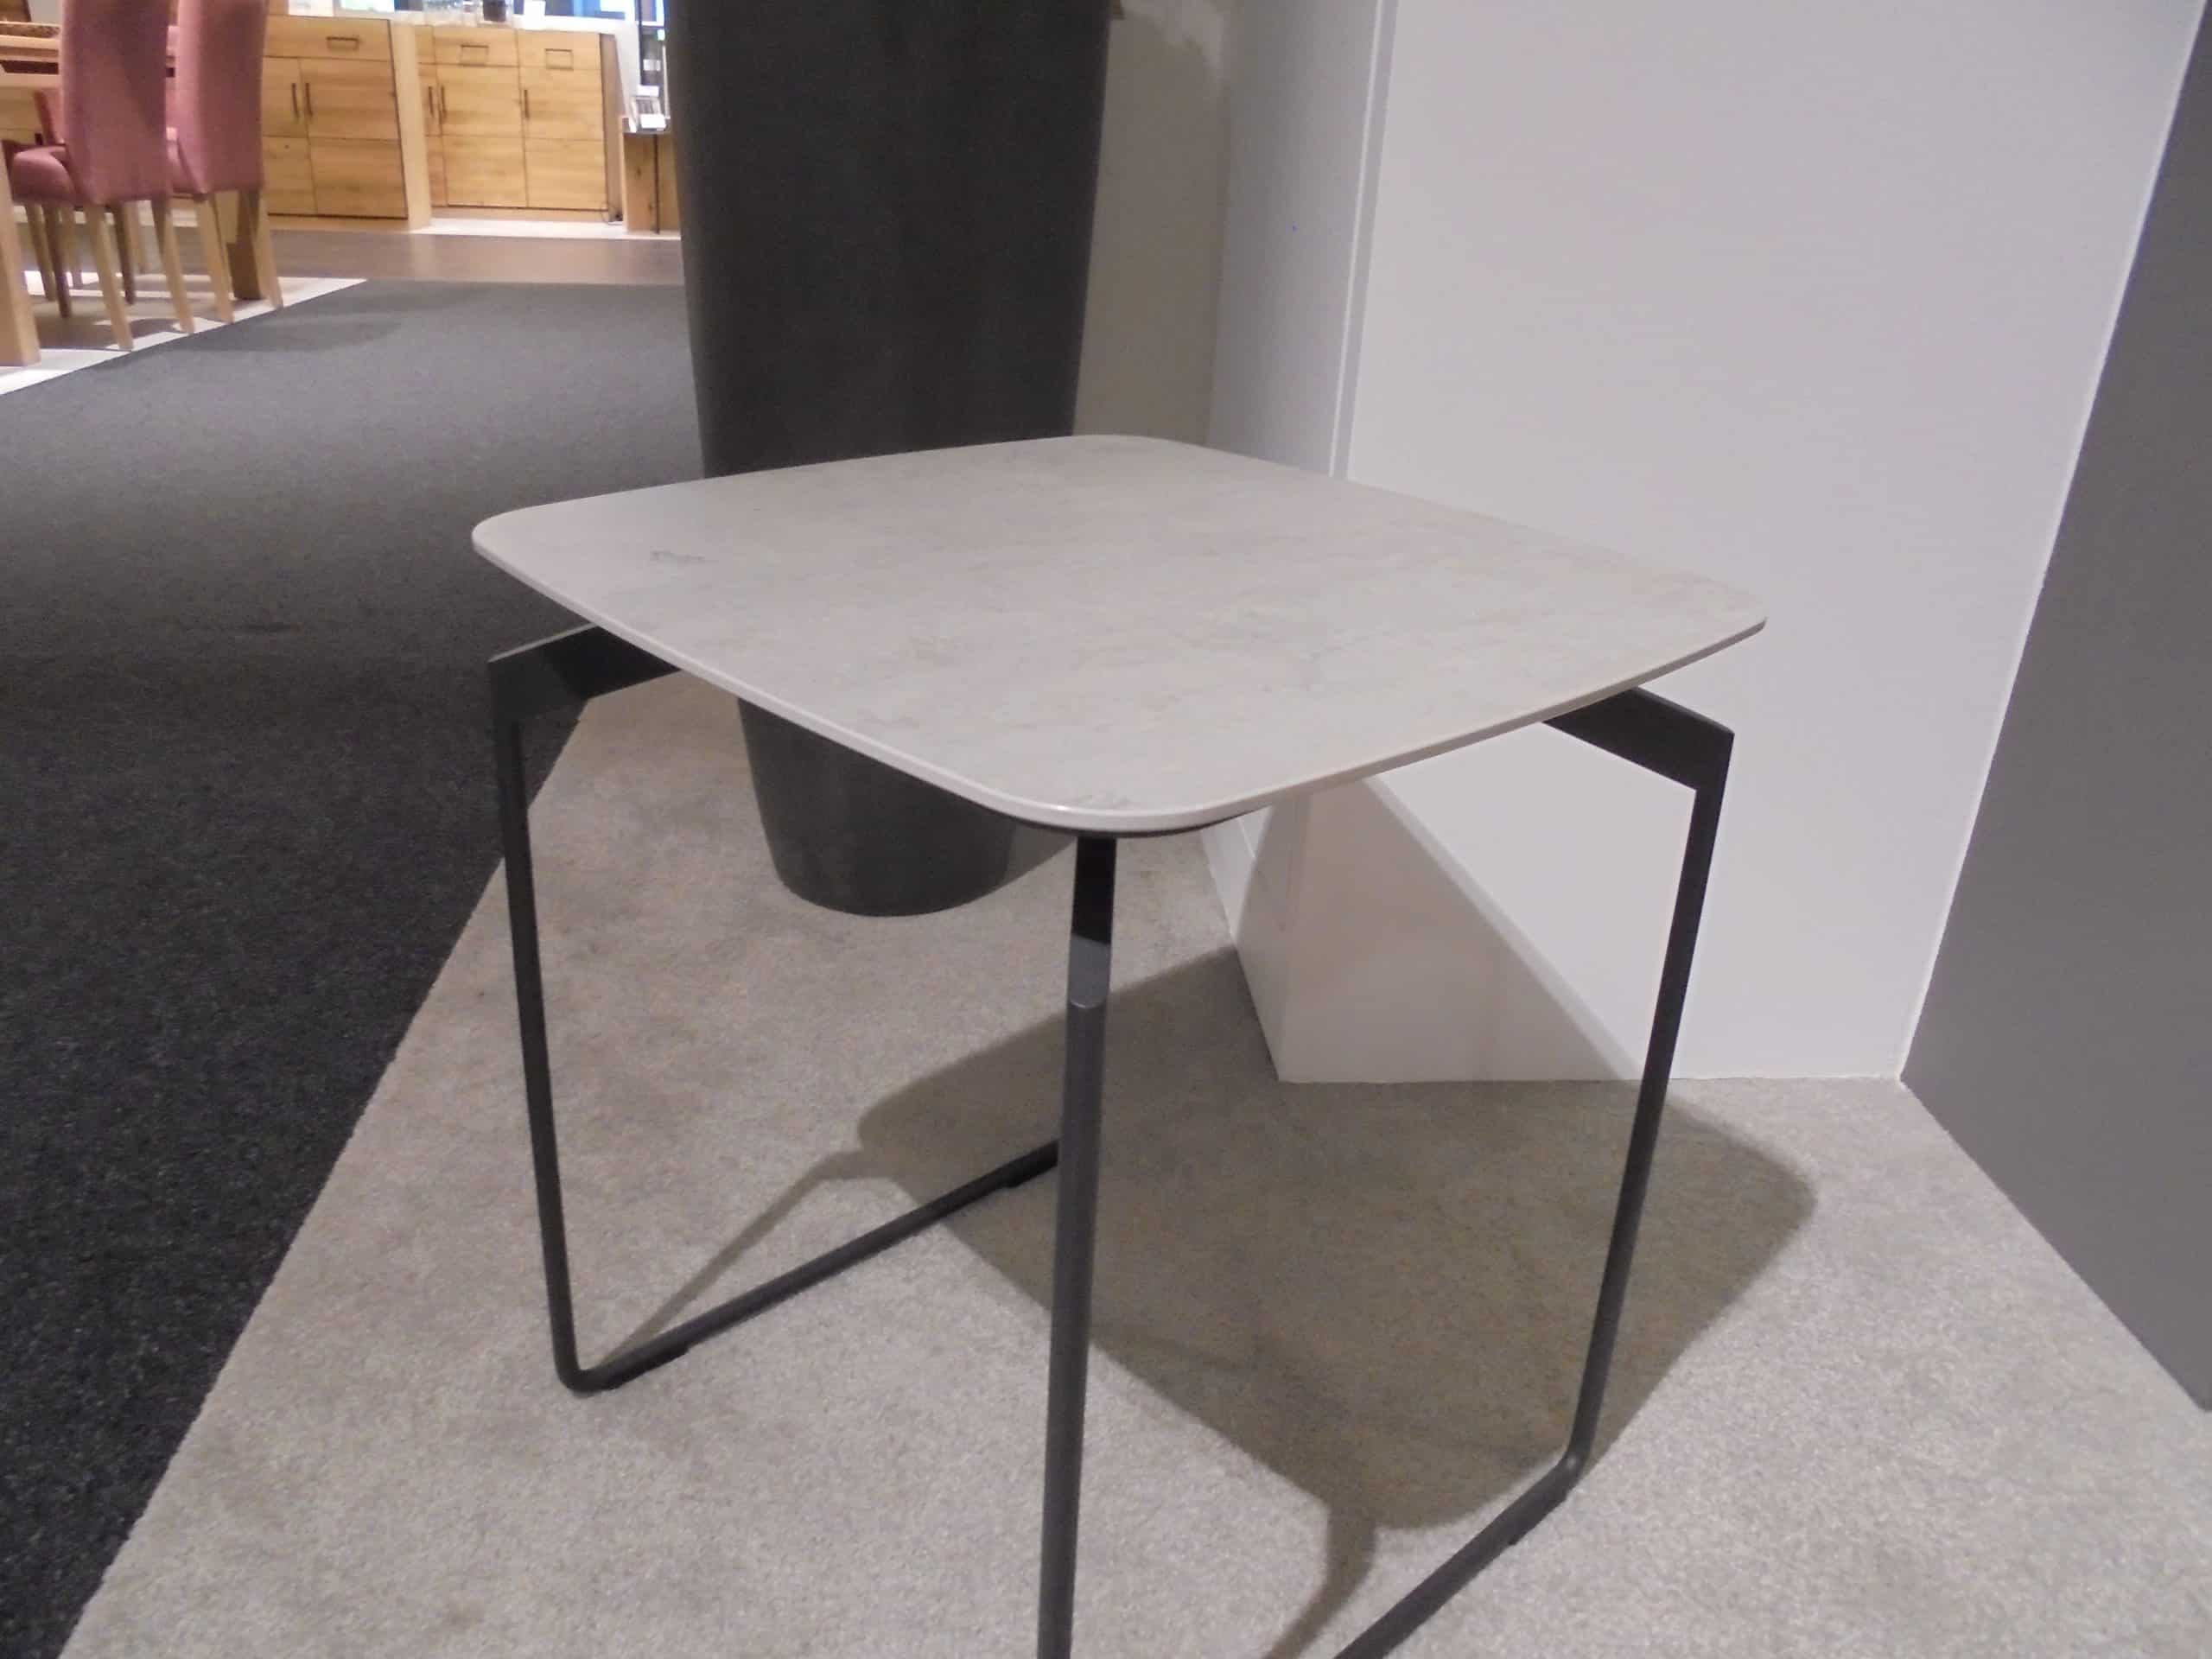 Beistelltisch 4540 mit Platte Keramik beton und Metallgestell anthrazit matt, 43 x 43 cm und 49 cm hoch, bei Möbelhaus Thiex zum Abverkauf über 32 % reduziert.